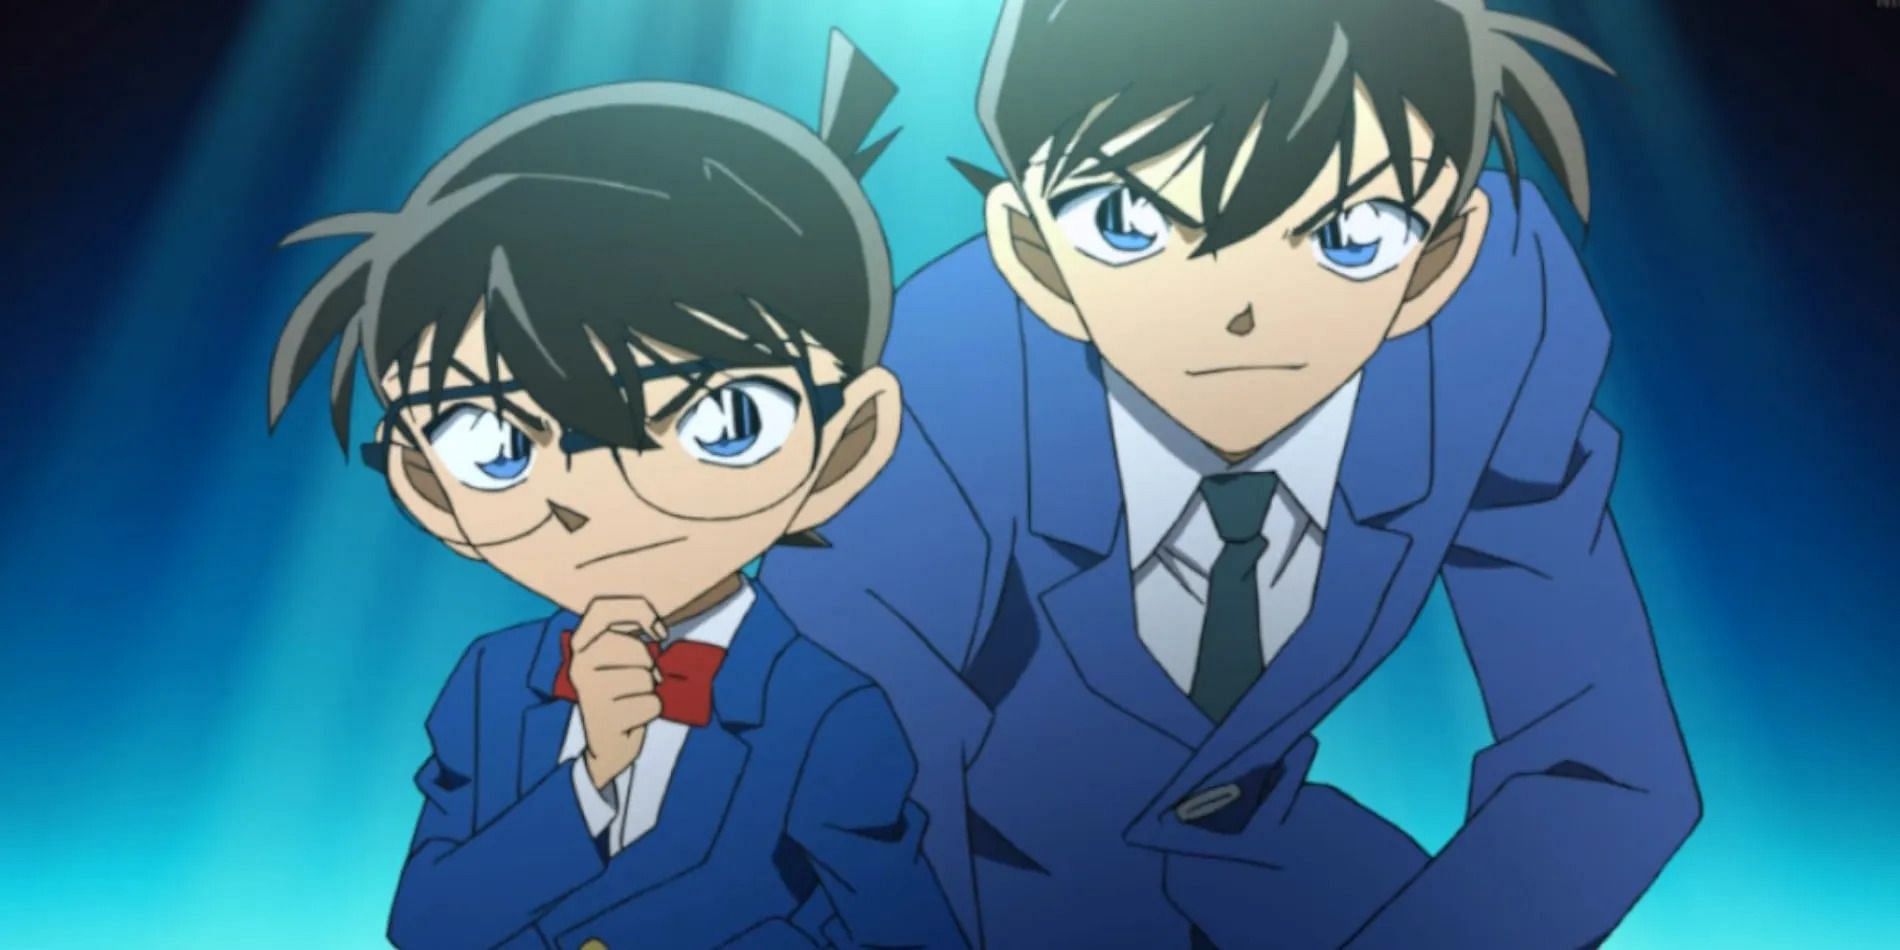 Conan and Shinichi as seen in Detective Conan (Image via TMS Entertainment)